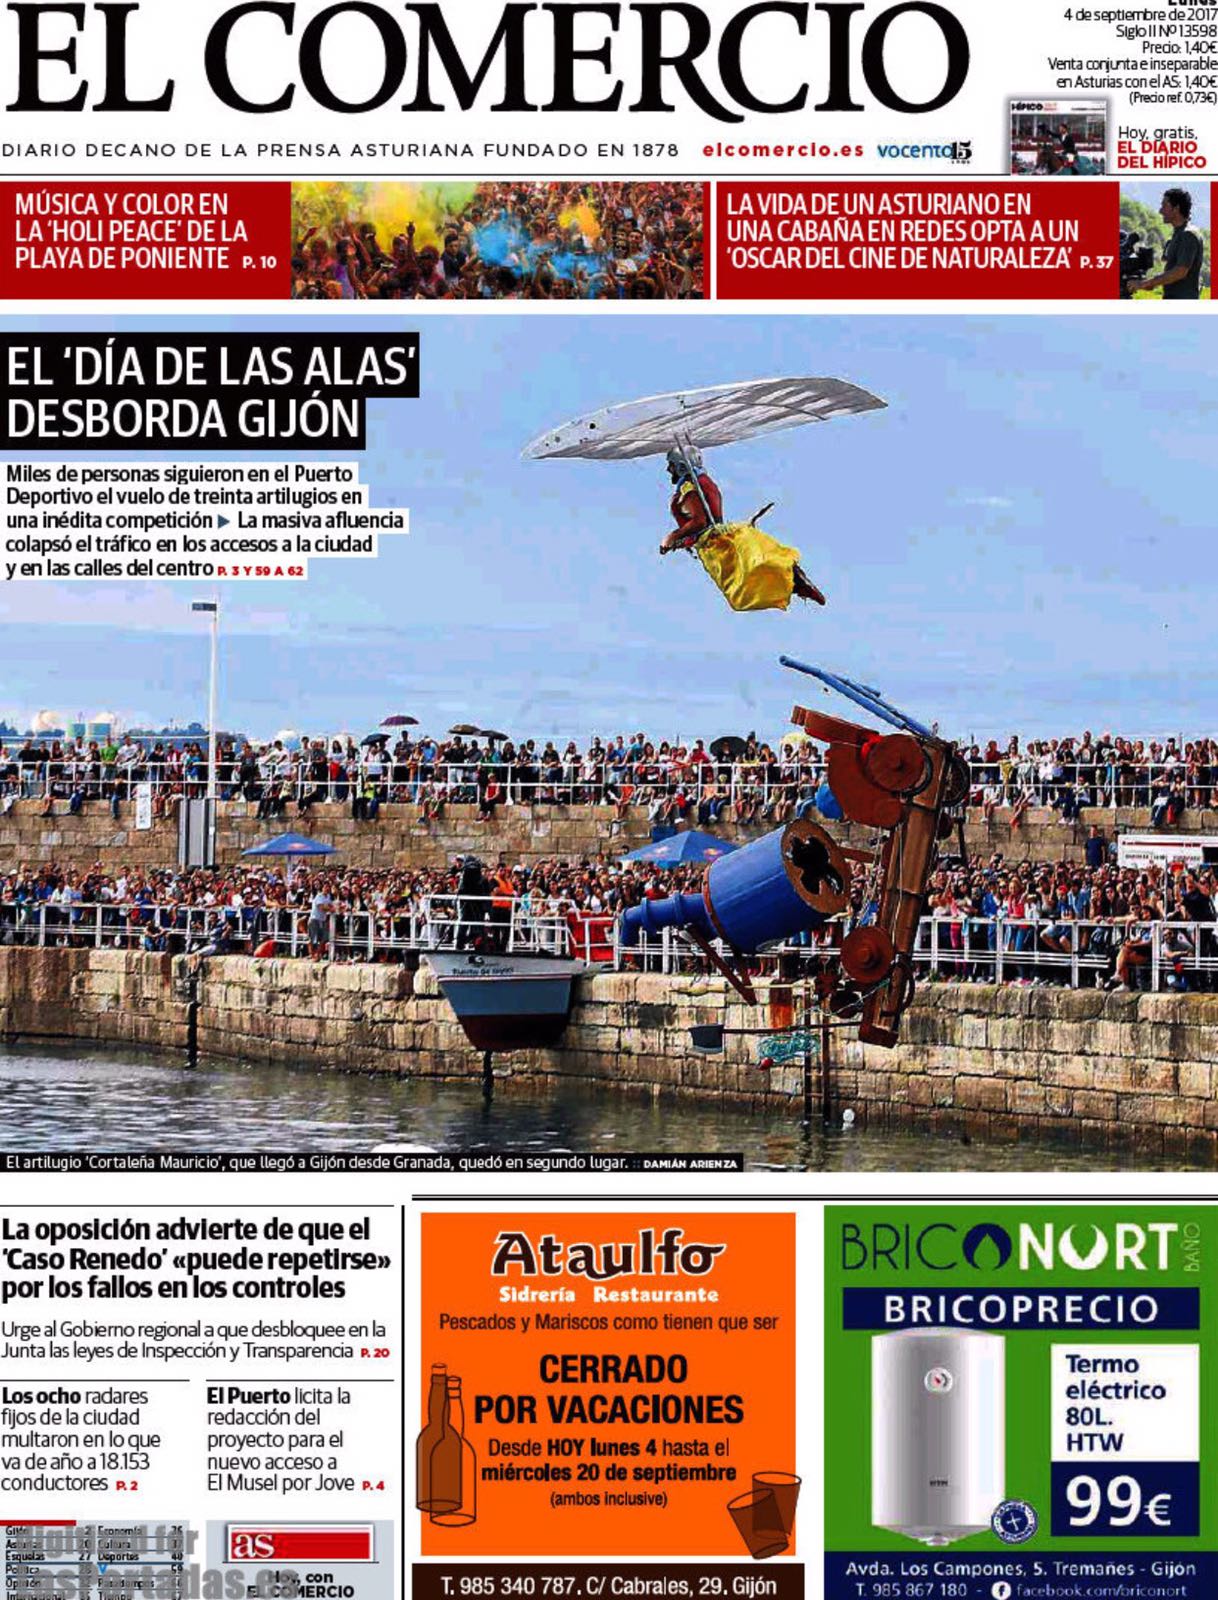 Portada del diario El Comercio donde se aprecia el salto del equipo alboloteño `Cortaleña Mauricio`. 